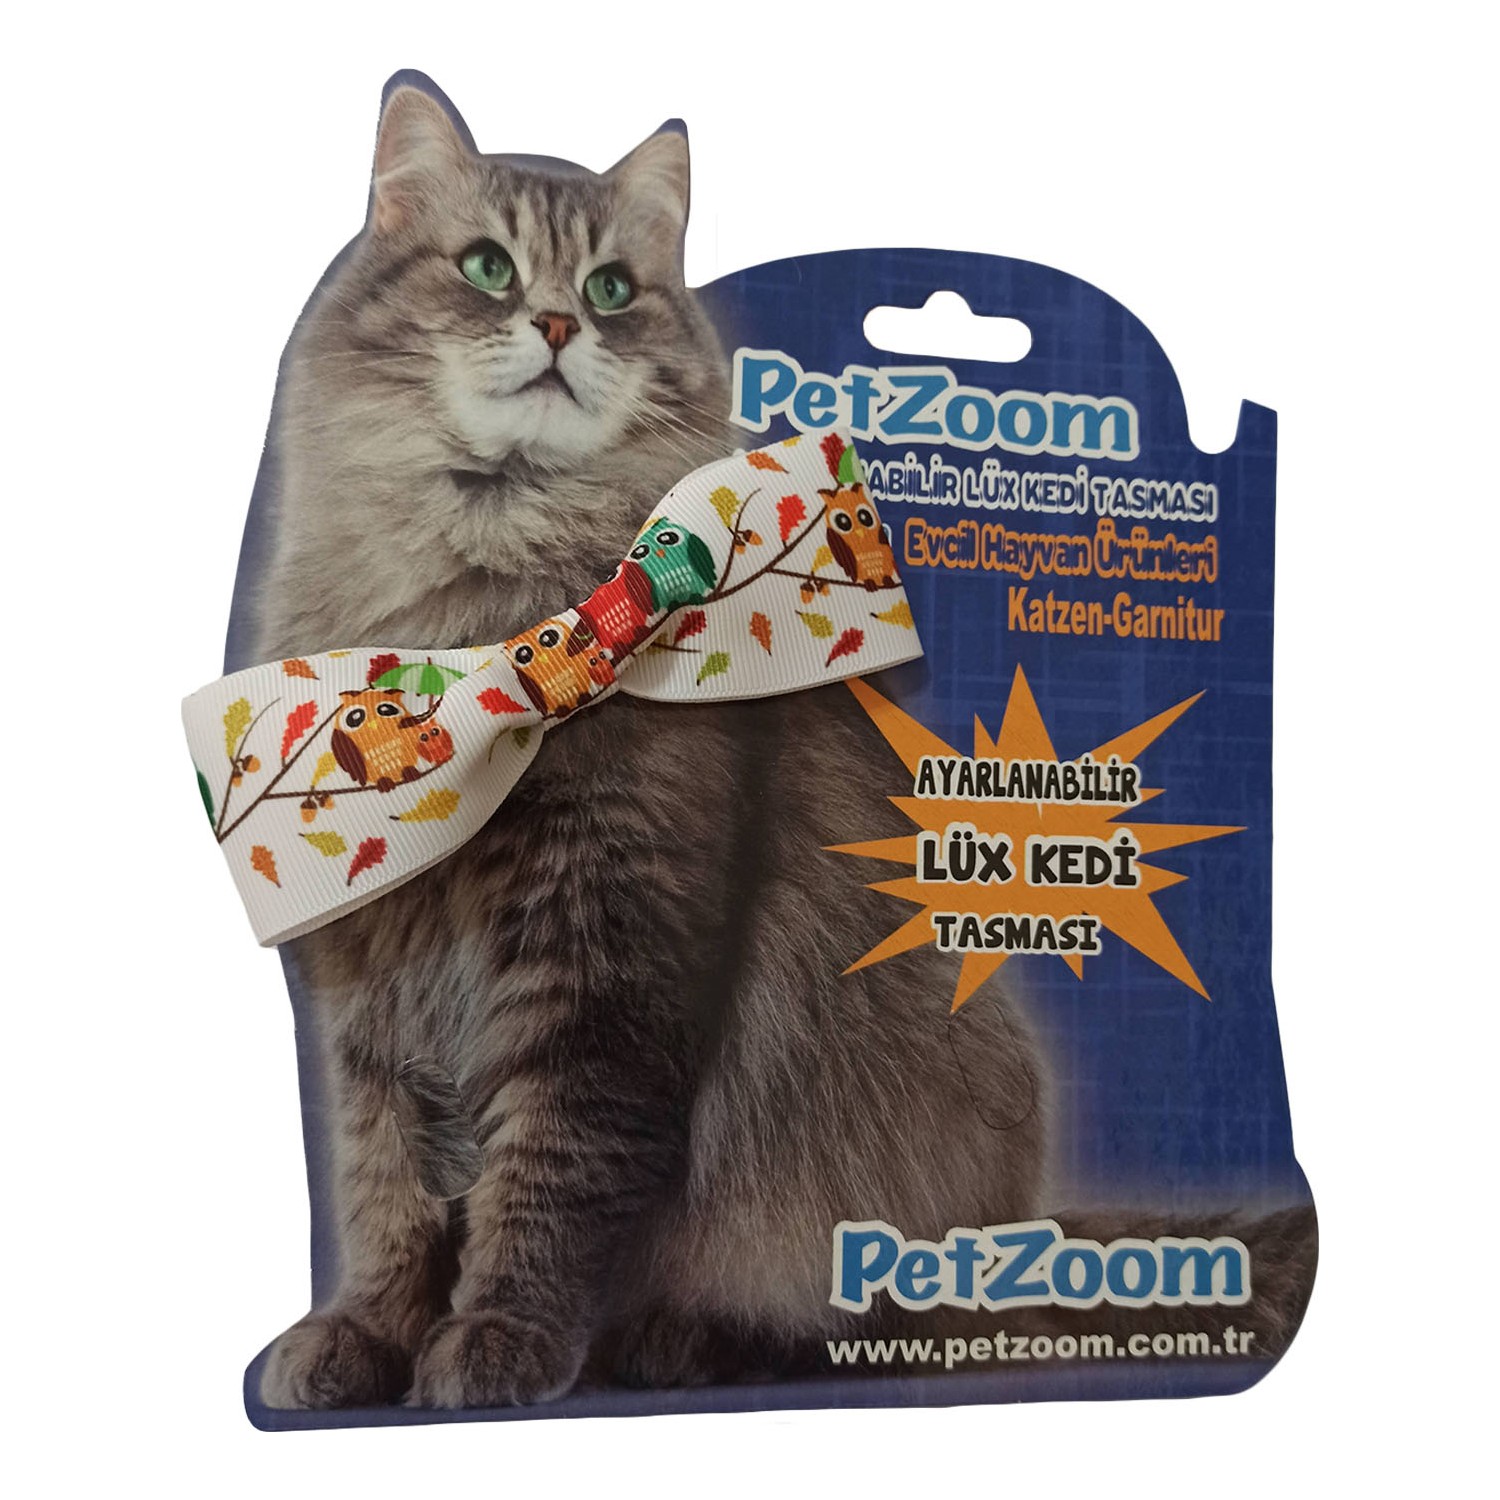 PetZoom Papyonlu Kedi Boyun Tasması Fiyatı Taksit Seçenekleri